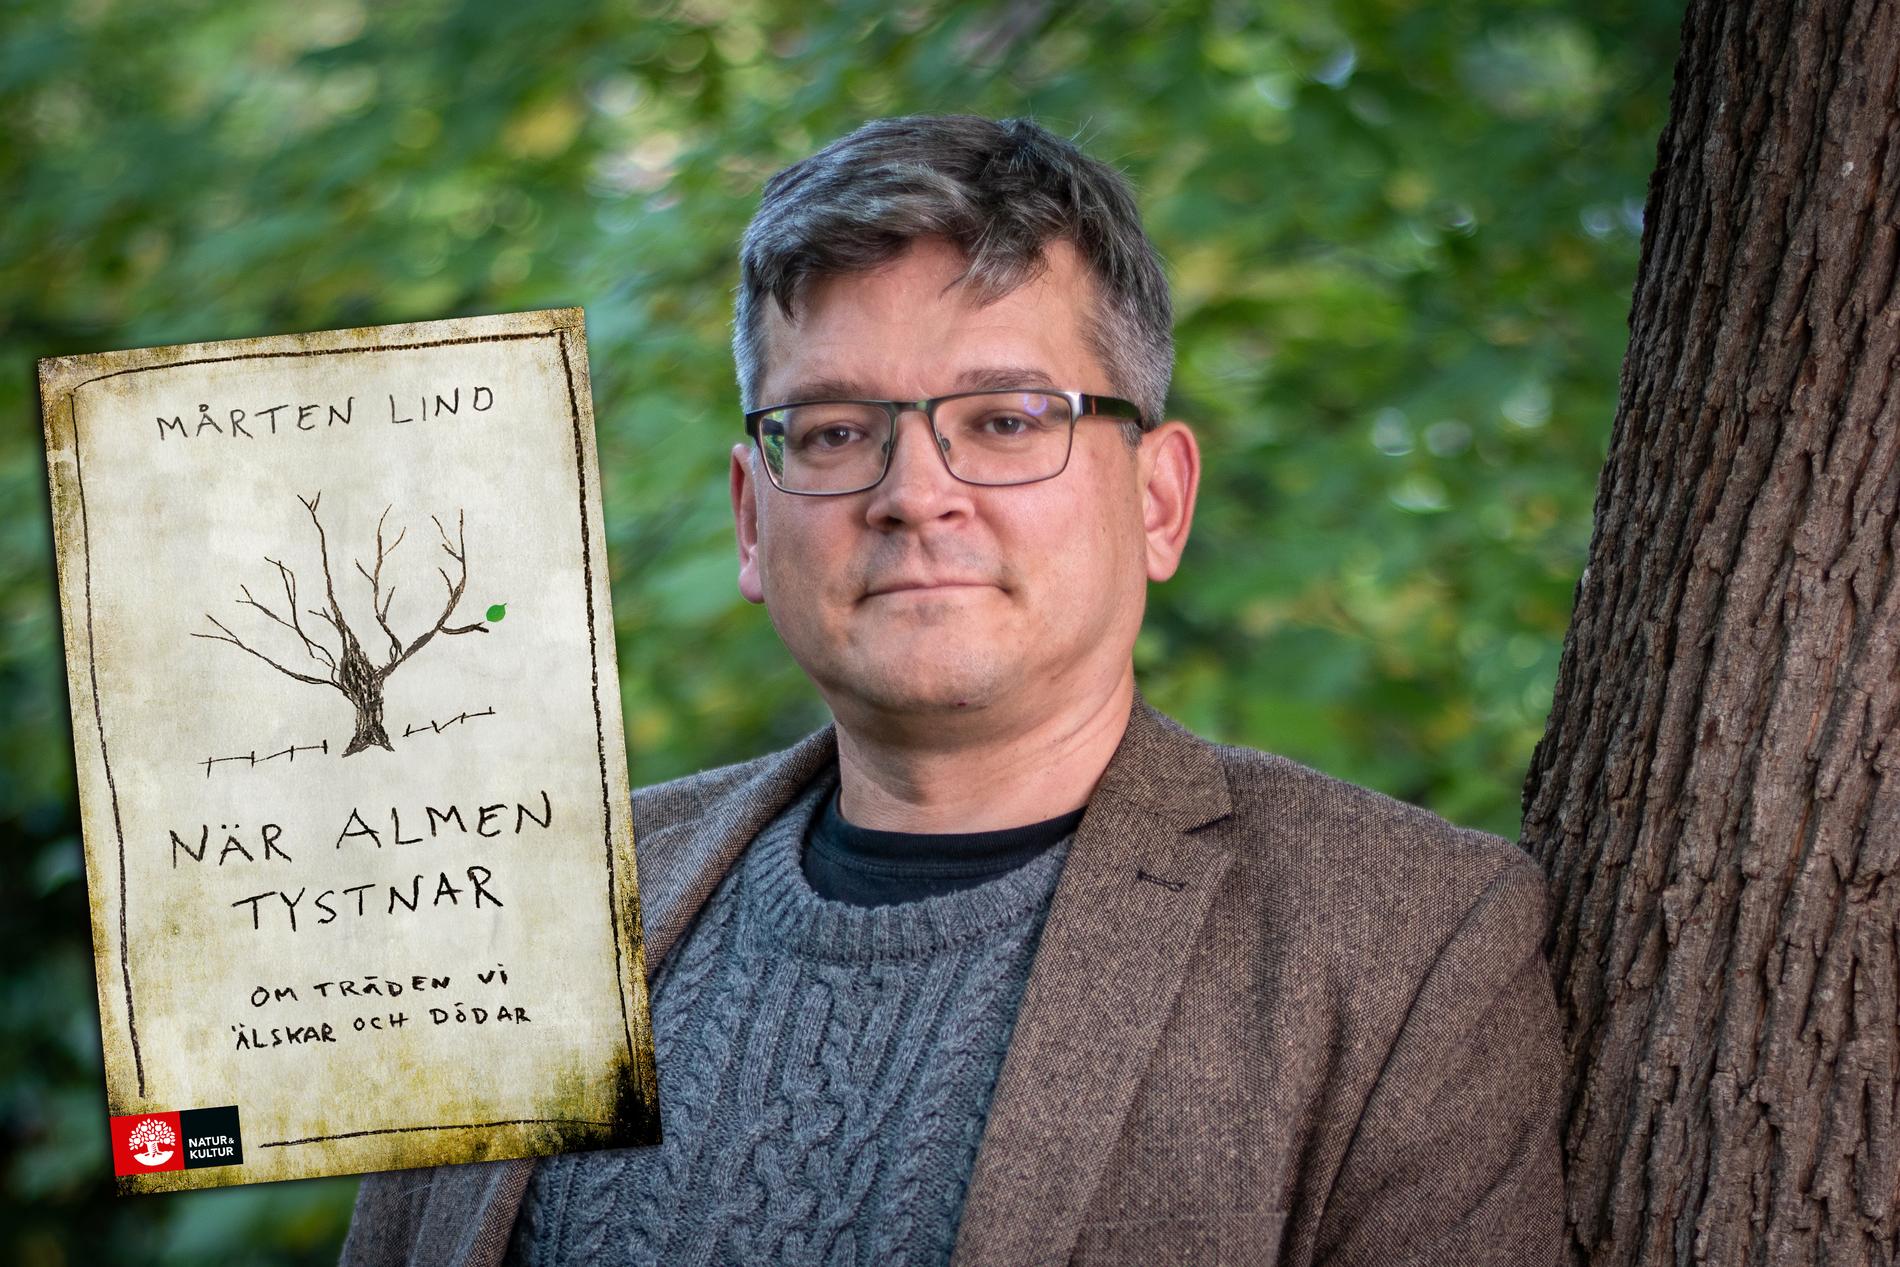 Mårten Lind är doktor i svampgenetik och har arbetat i många år som forskare och föreläsare om skogssjukdomar vid Sveriges lantbruksuniversitet. Han är nu aktuell med boken ”När almen tystnar: Om träden vi älskar och dödar”.